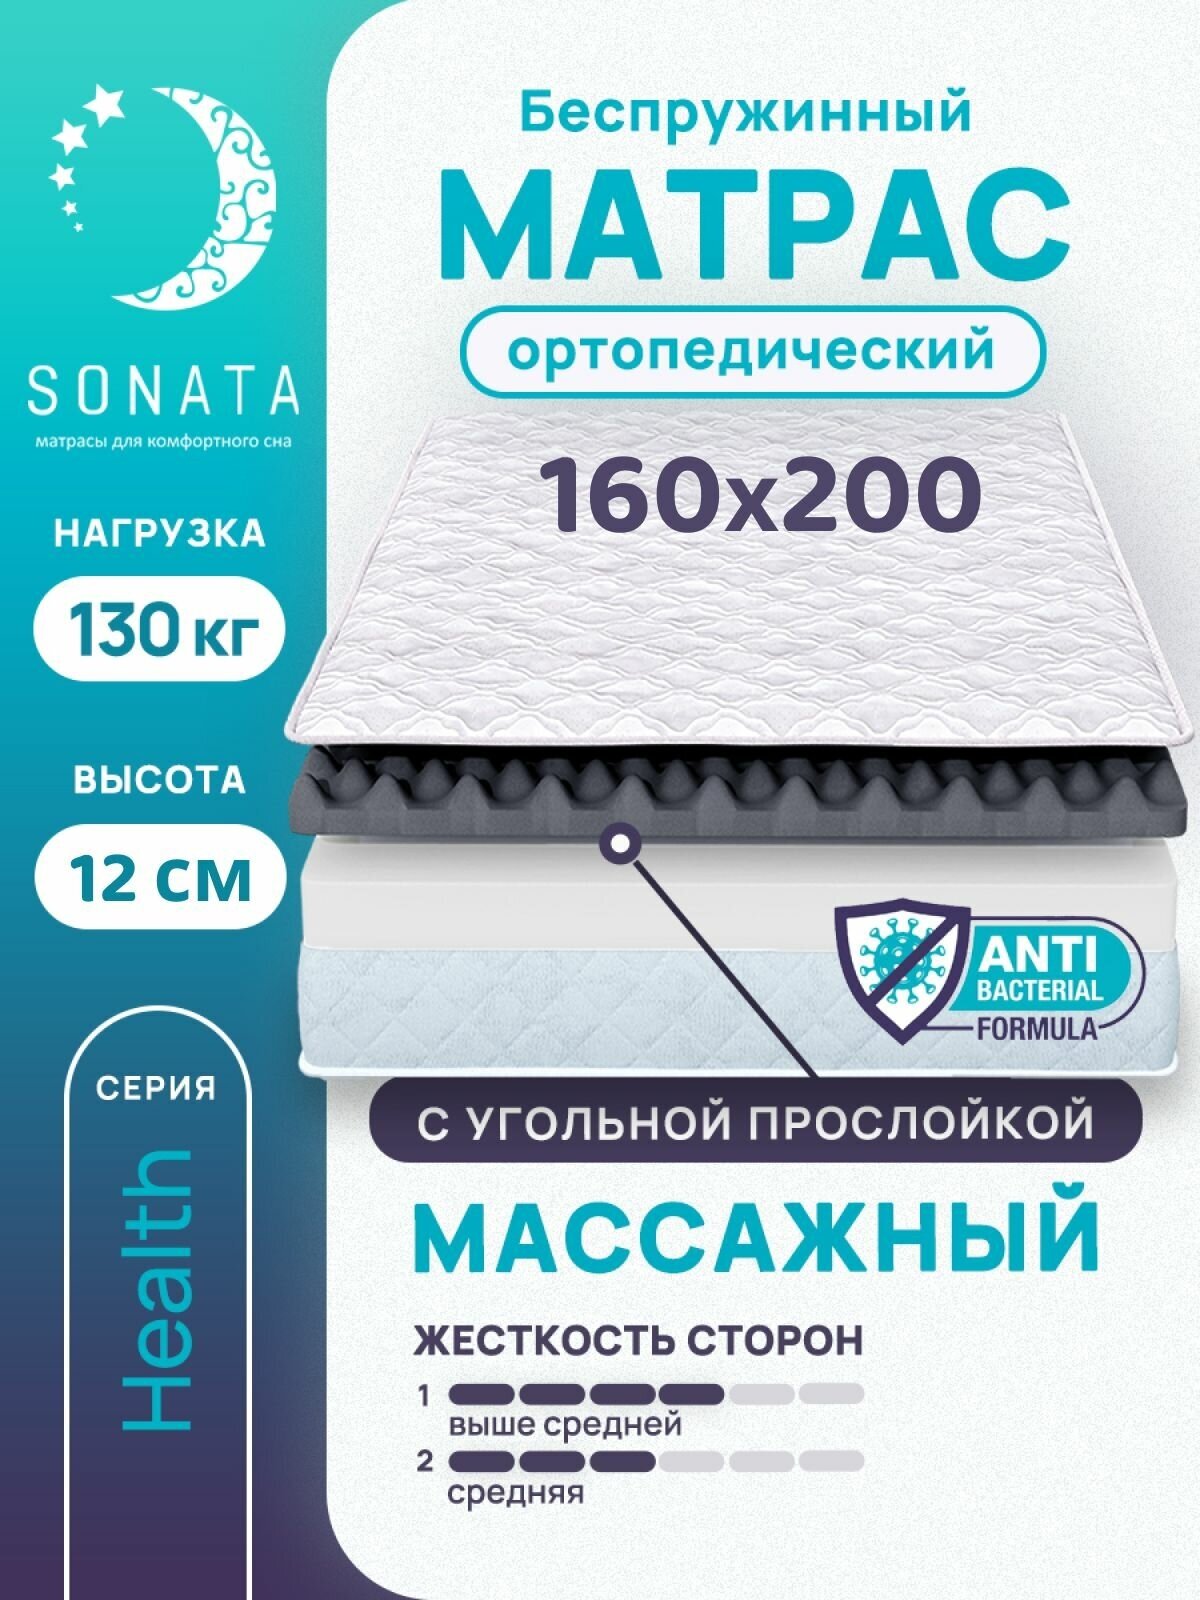 Матрас 160х200 см SONATA, ортопедический, беспружинный, двуспальный, матрац для кровати, высота 12 см, с массажным эффектом